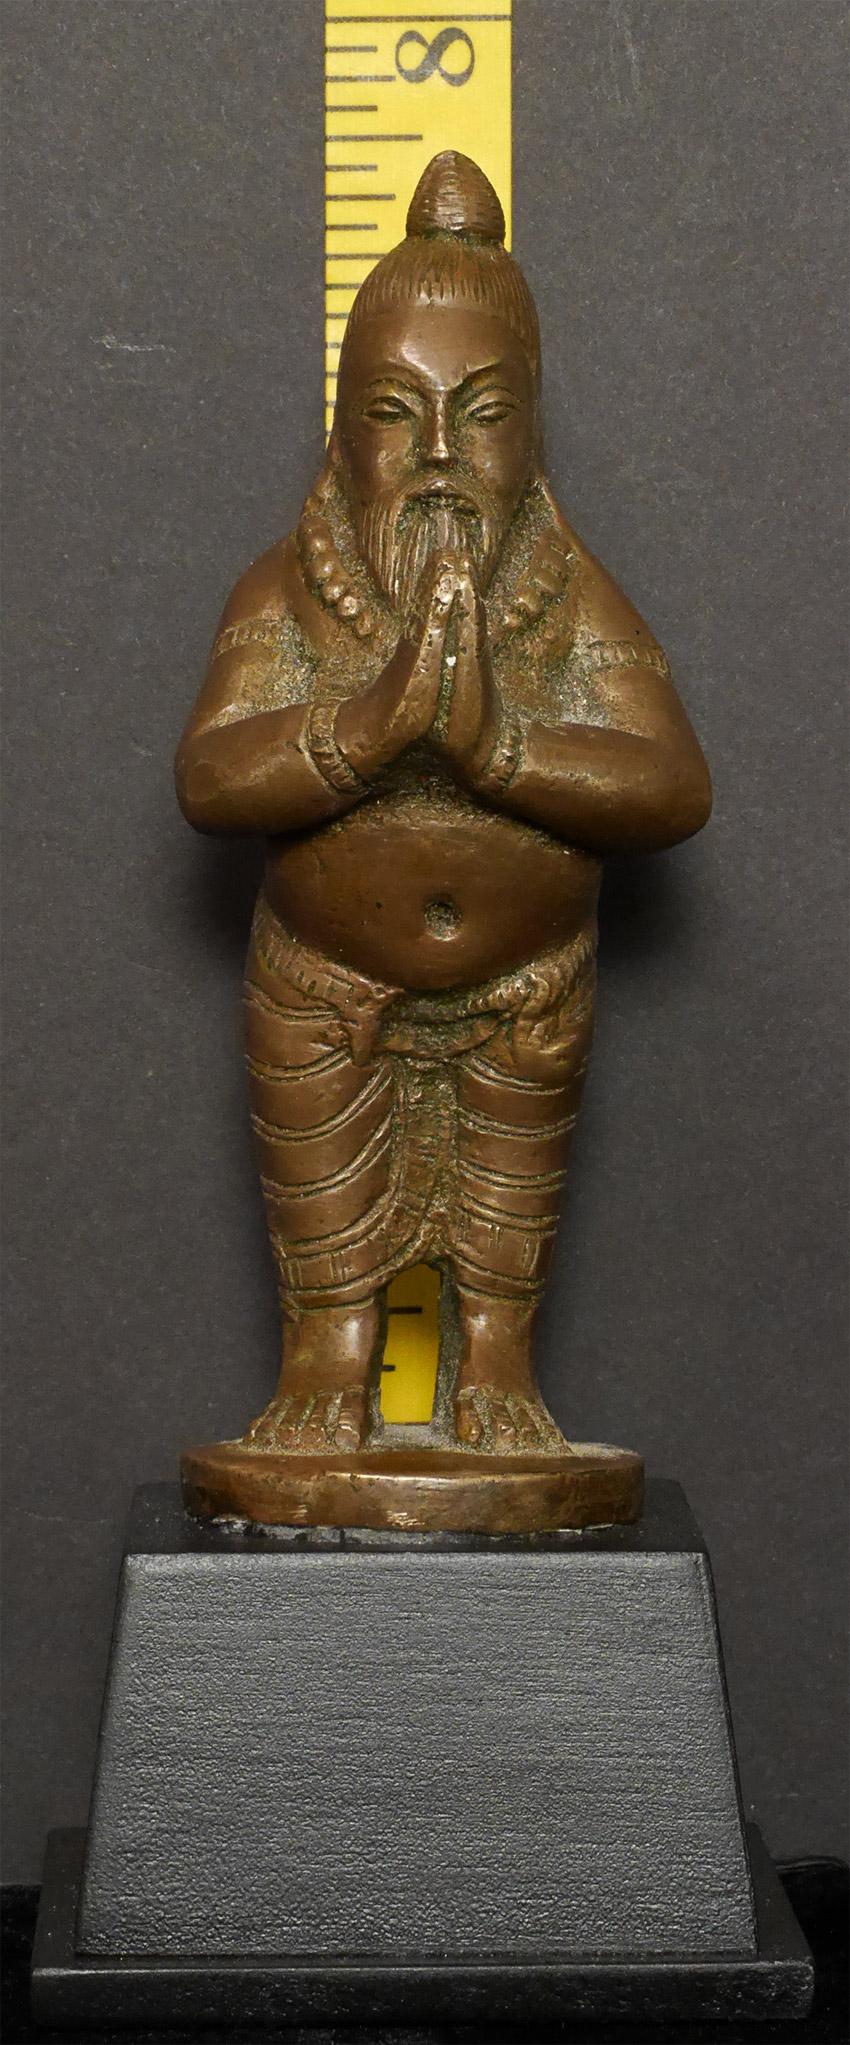 Antique Bronze Indian Yogi, Unique Solid-Cast Hindu Sculpture - 7816 For Sale 4